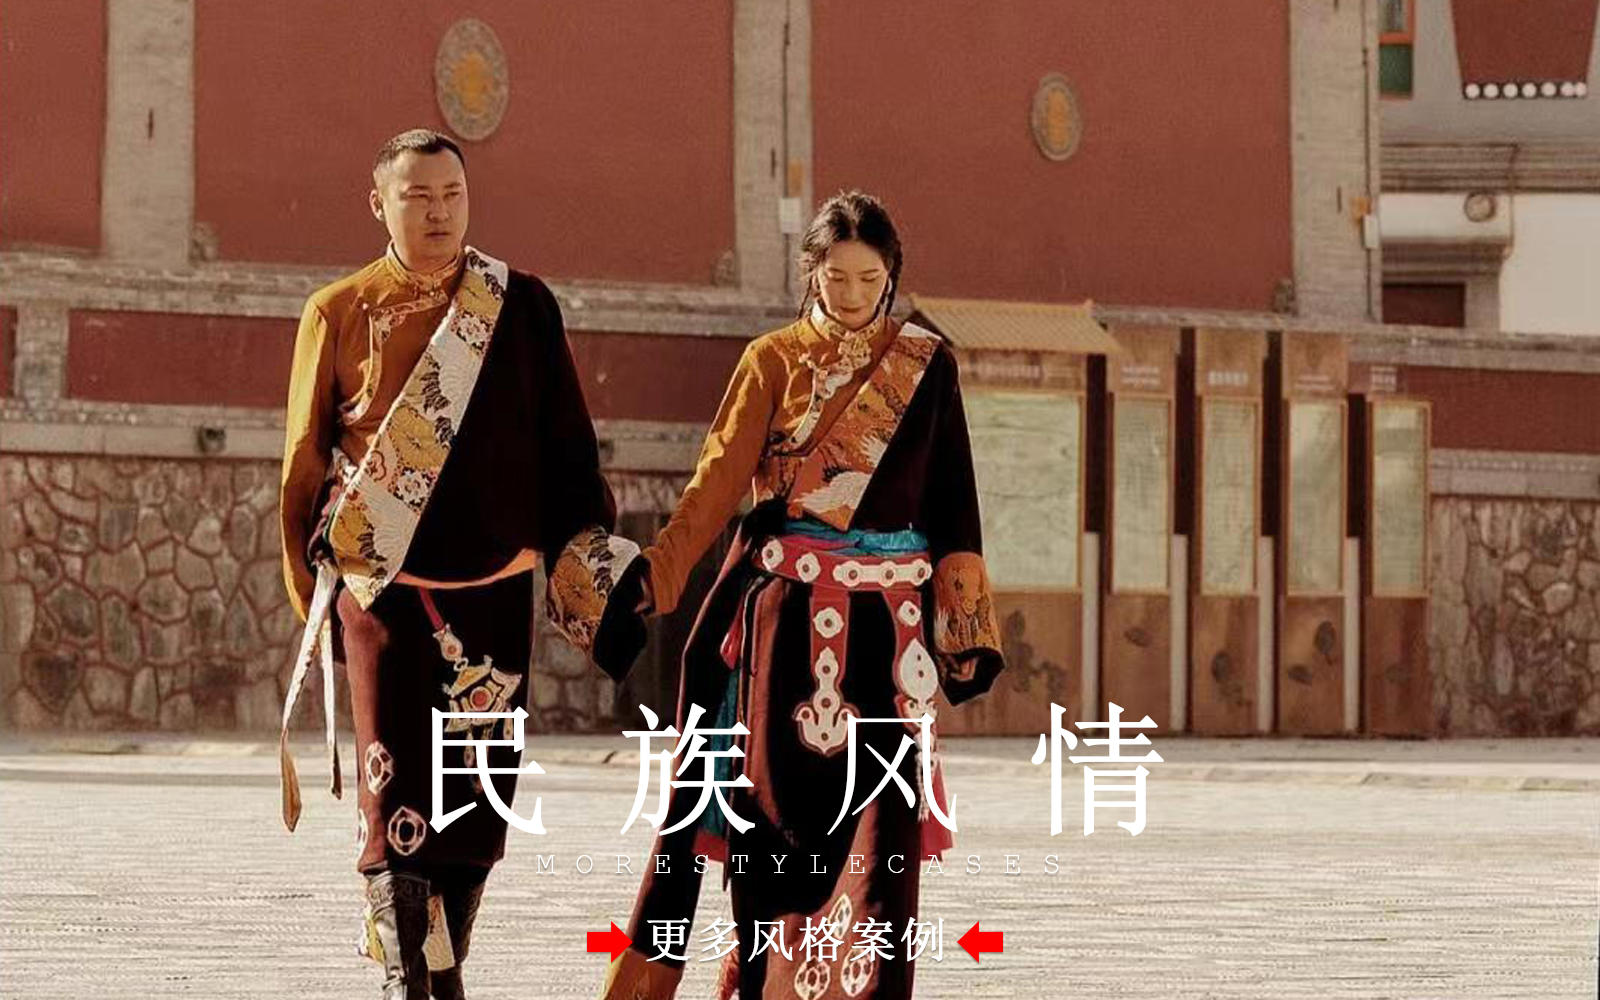 【皇后视觉】在拍一种很新的藏族婚纱照